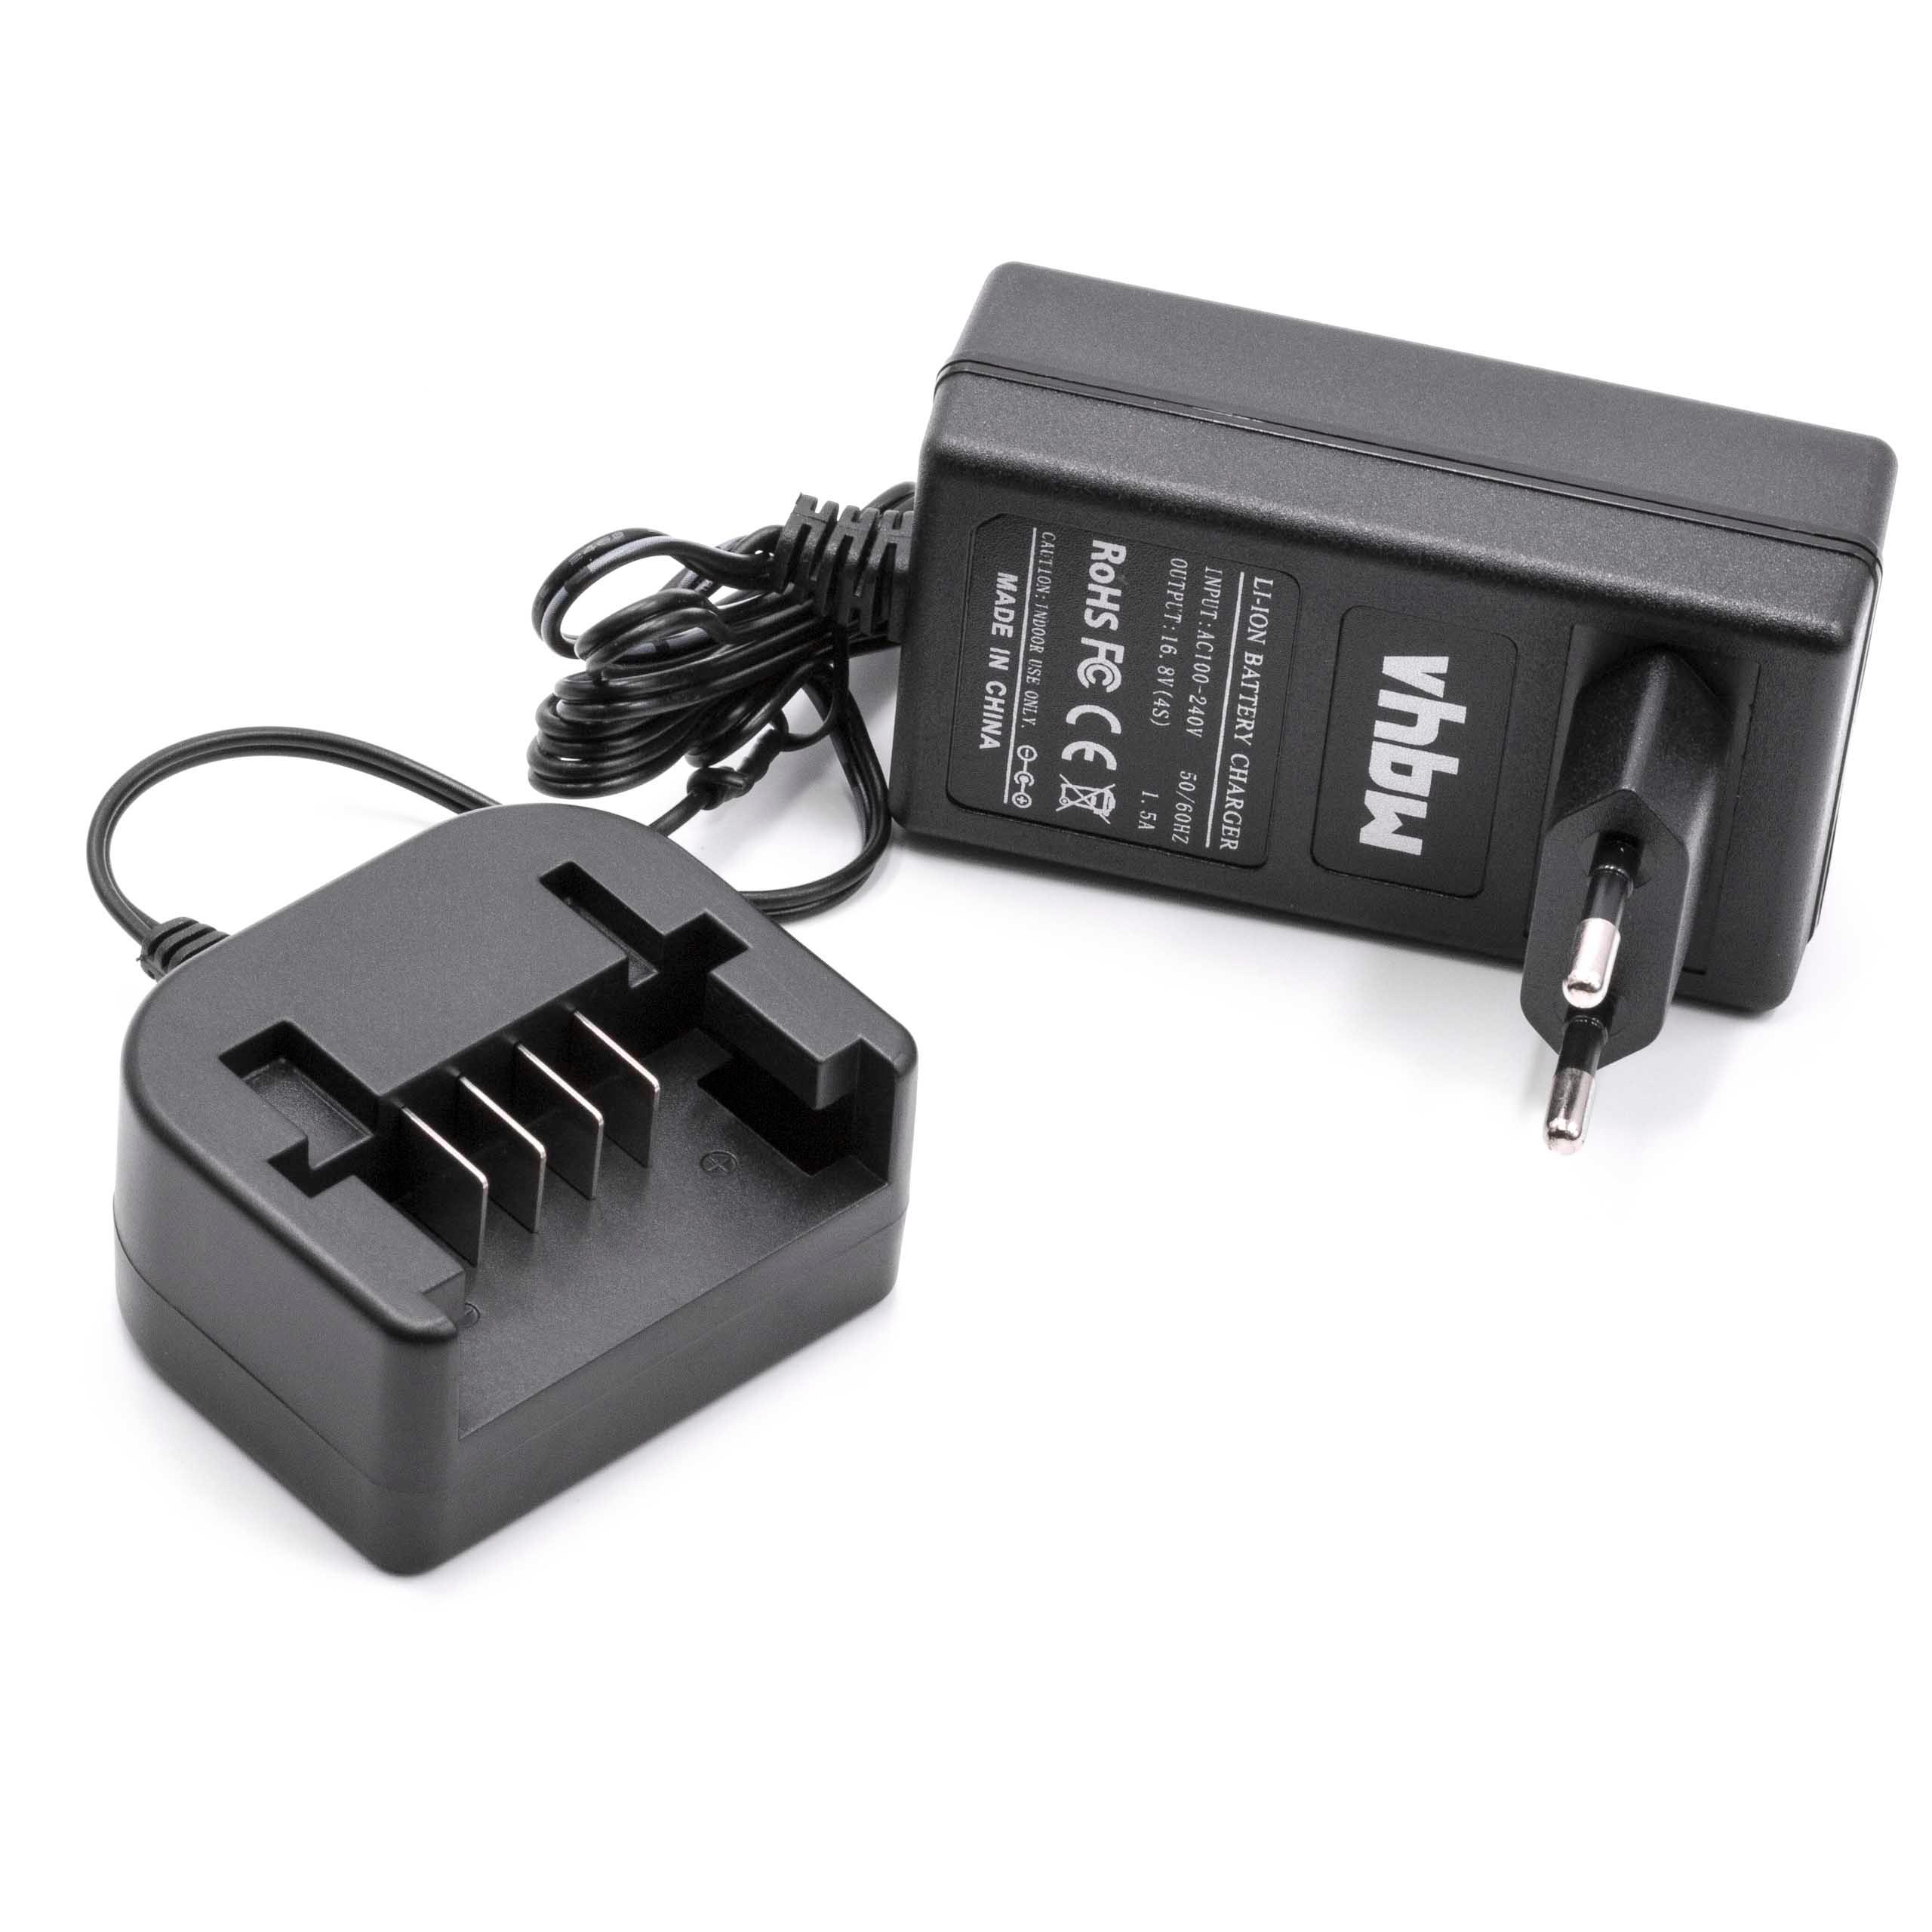 Chargeur pour batterie d'outil électrique Black & Decker, ASL146